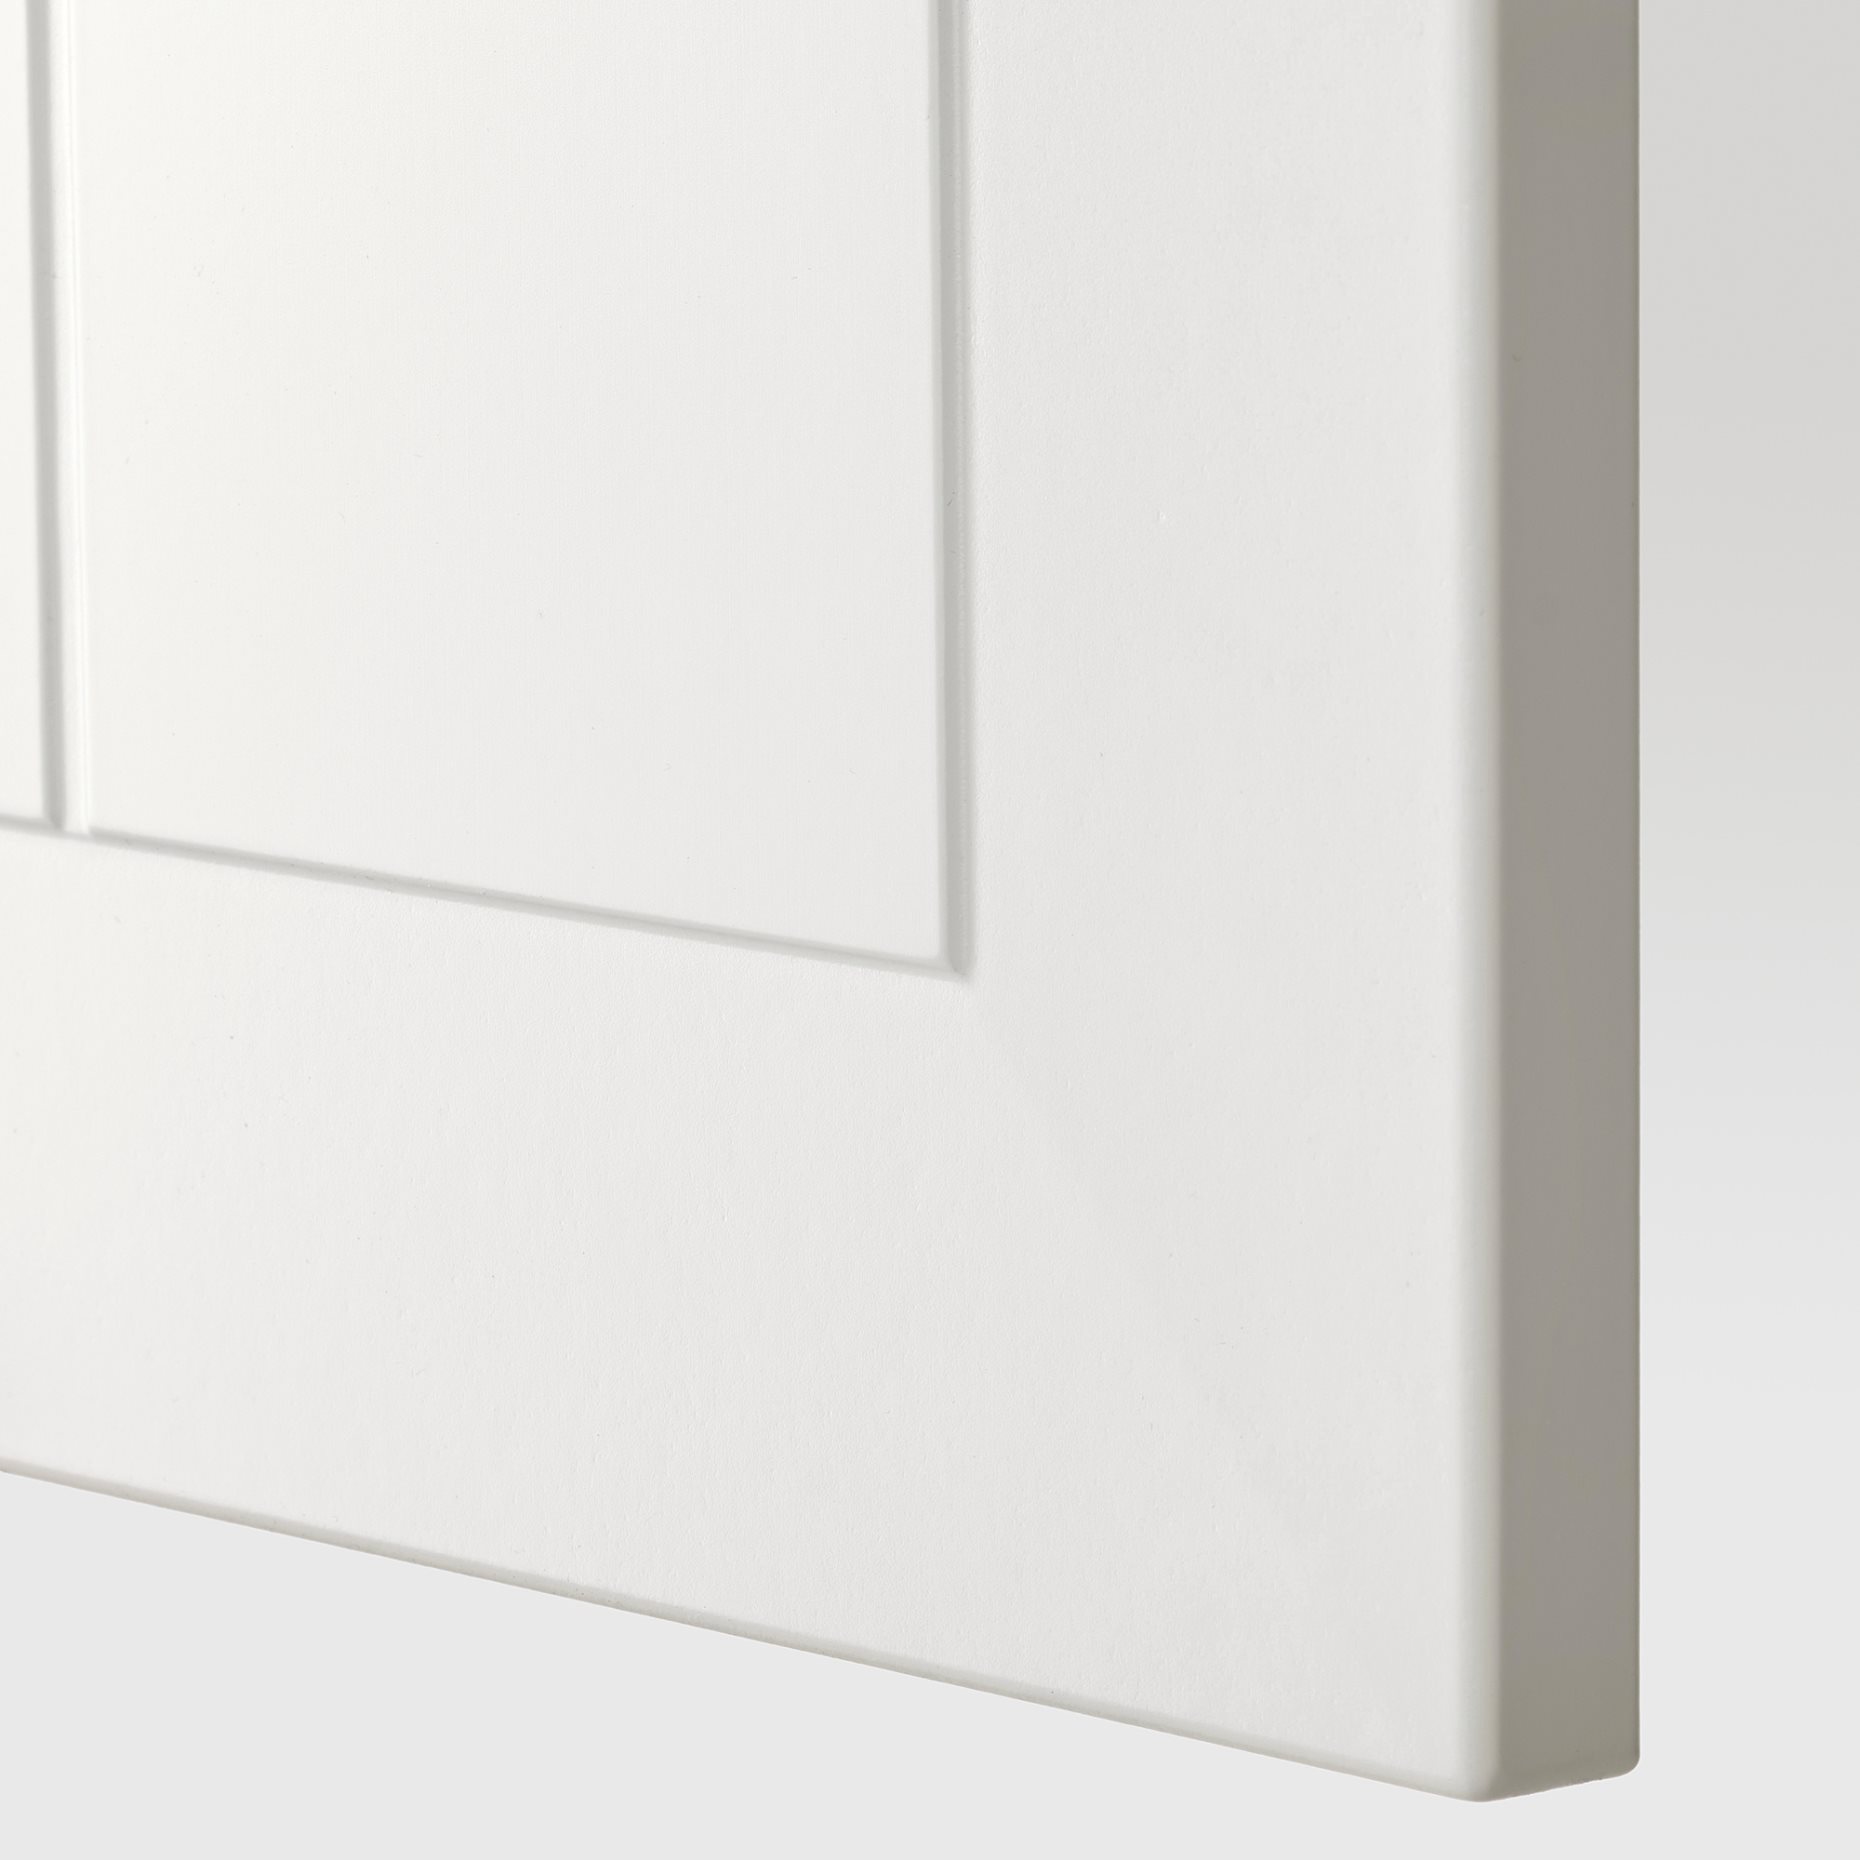 METOD, γωνιακό ντουλάπι τοίχου με καρουζέλ, 68x80 cm, 194.092.06